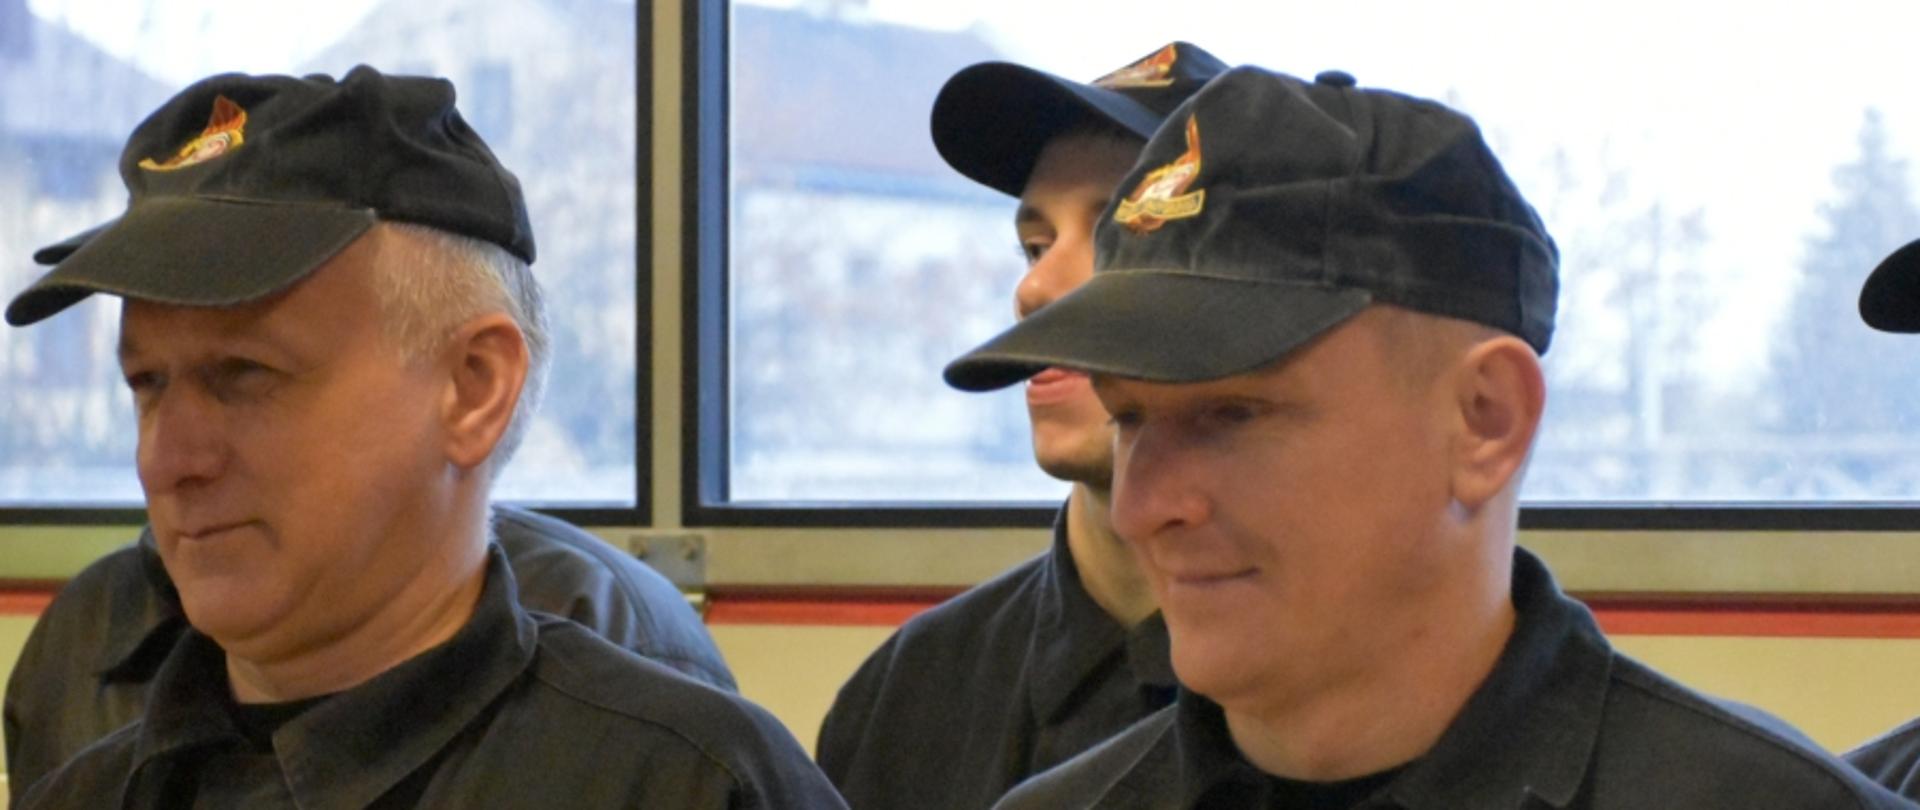 Zdjęcie przedstawia dwóch strażaków odchodzących na zaopatrzenie emerytalne. Stoją oni obok siebie w podczas uroczystej zmiany służby.